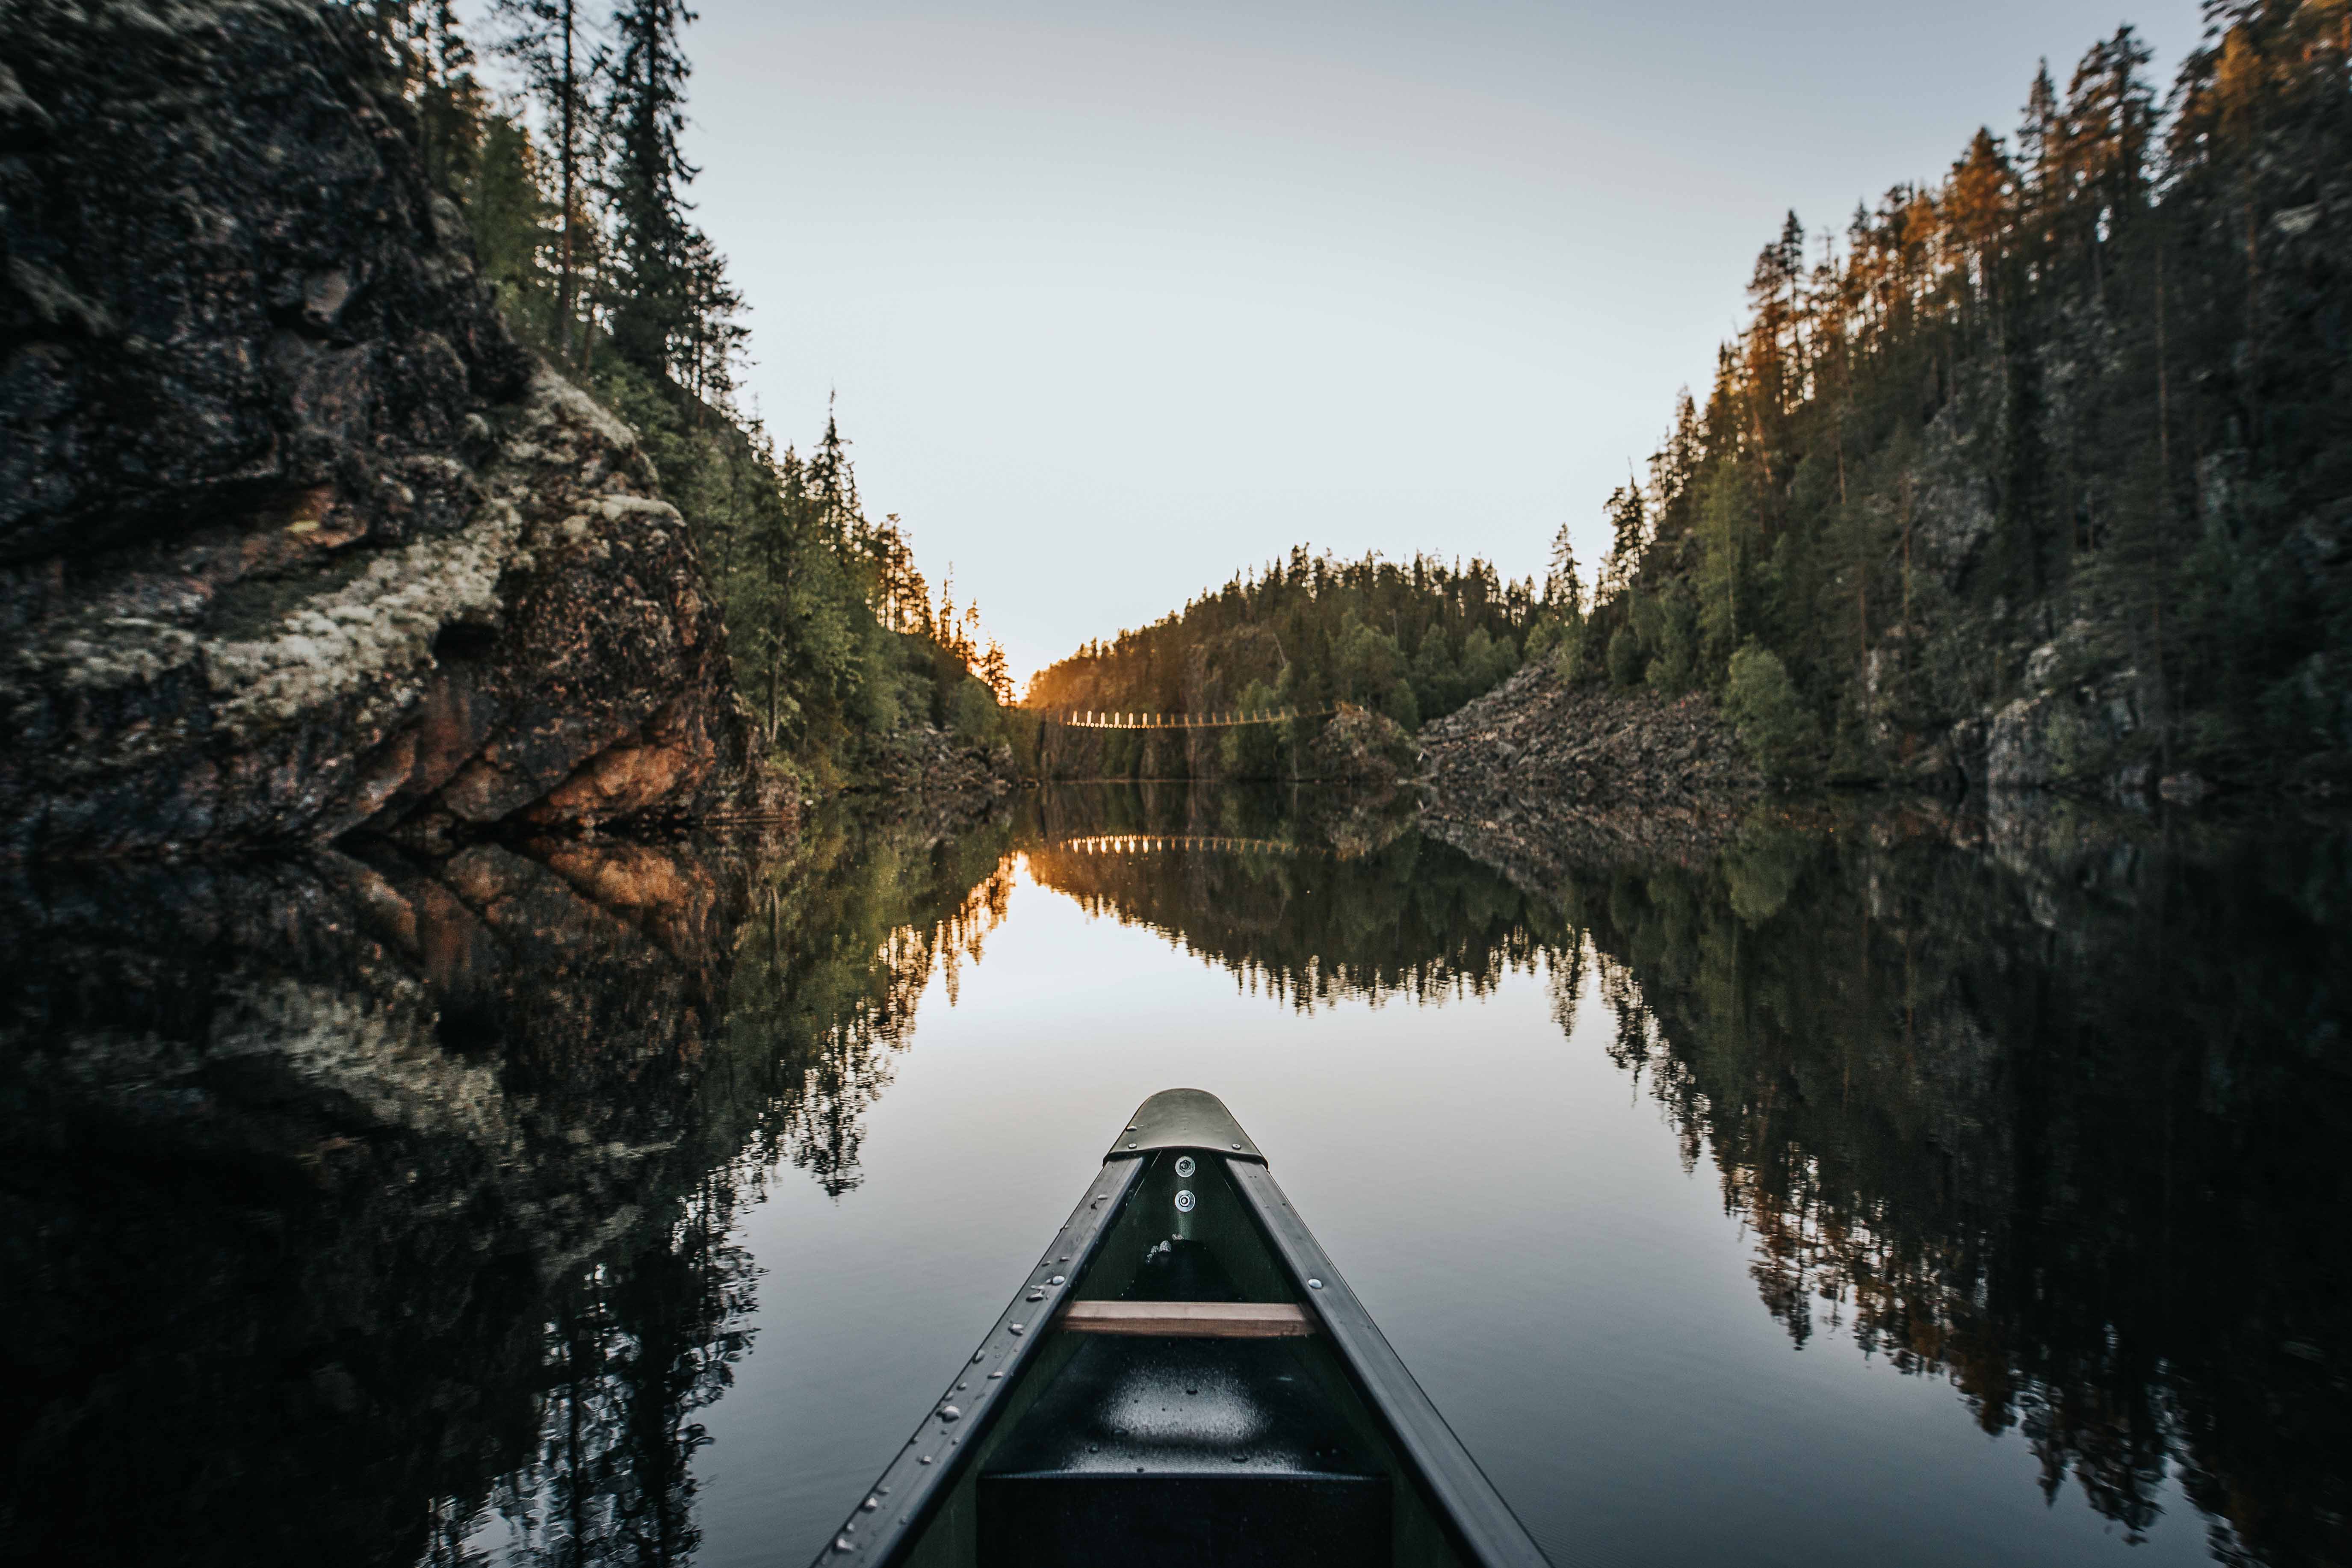 Una canoa in un lago stretto.